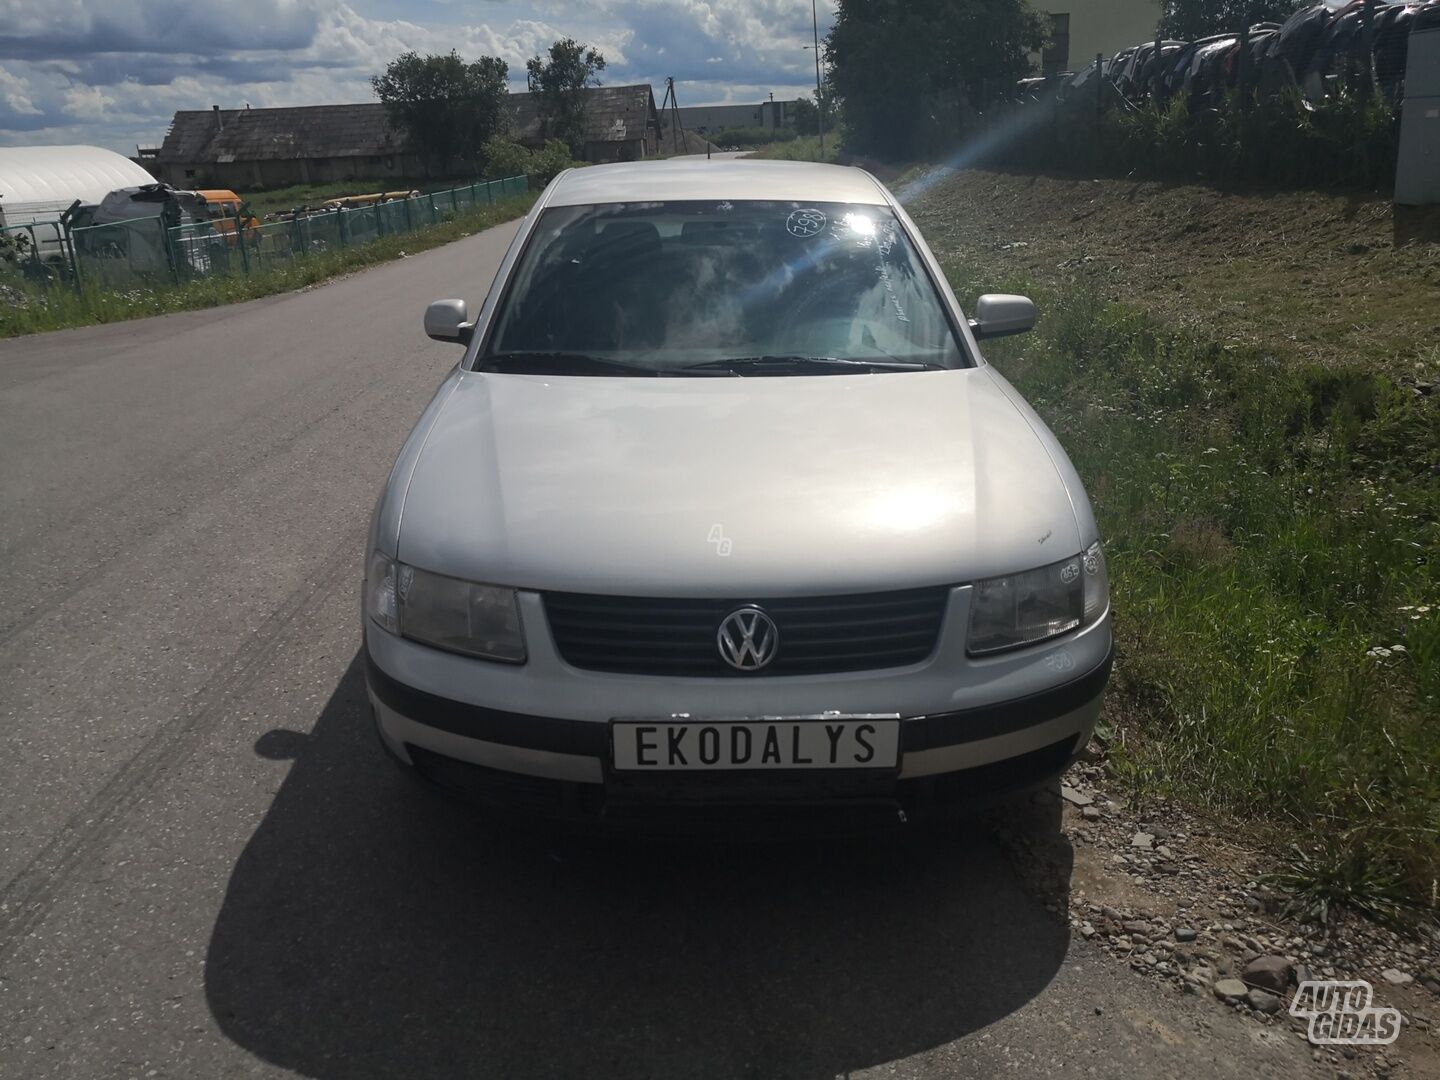 Volkswagen Passat 1999 y parts